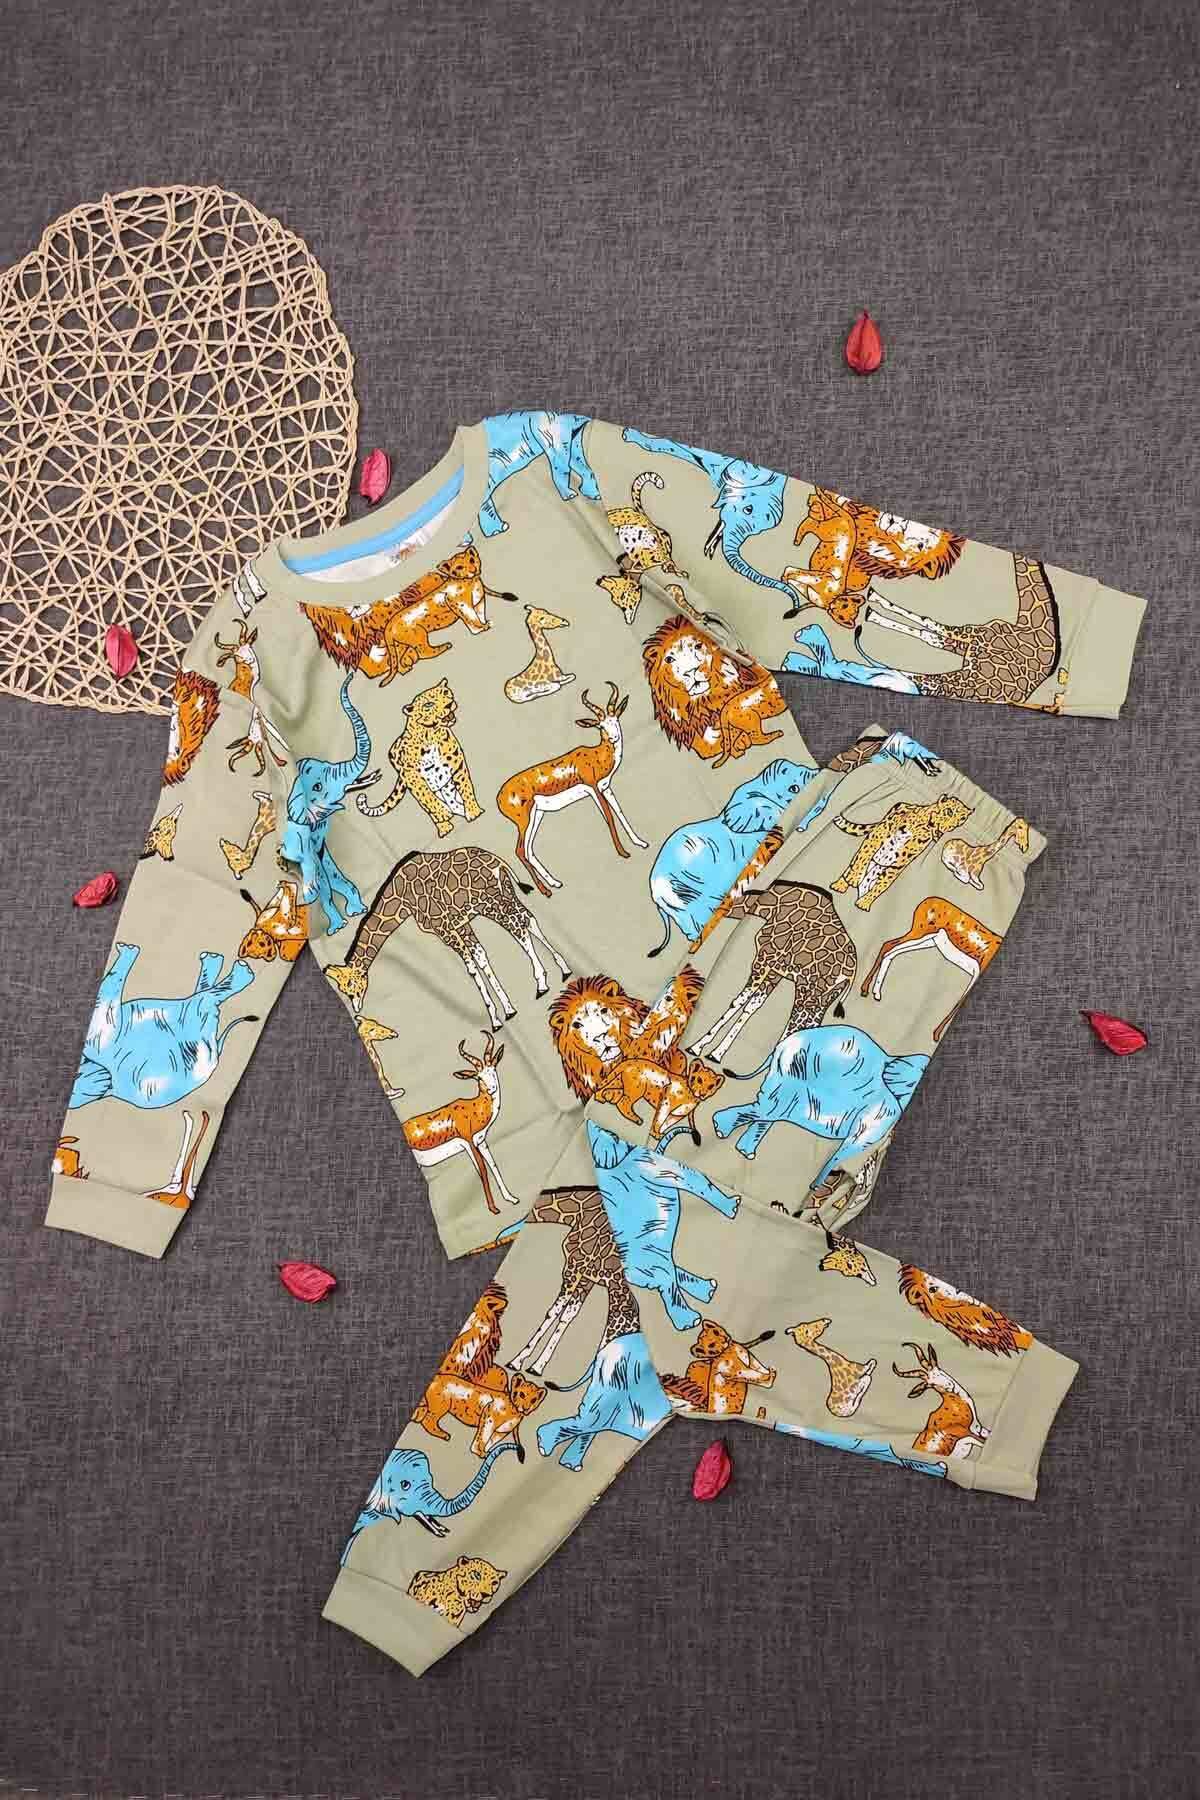 Peki Çocuk 5 Al 4 Öde Yumusak Pamuklu Orman Tema Pijama Takimi Aslan Leopar Fil Zürafa Ceylan Geyik 15065